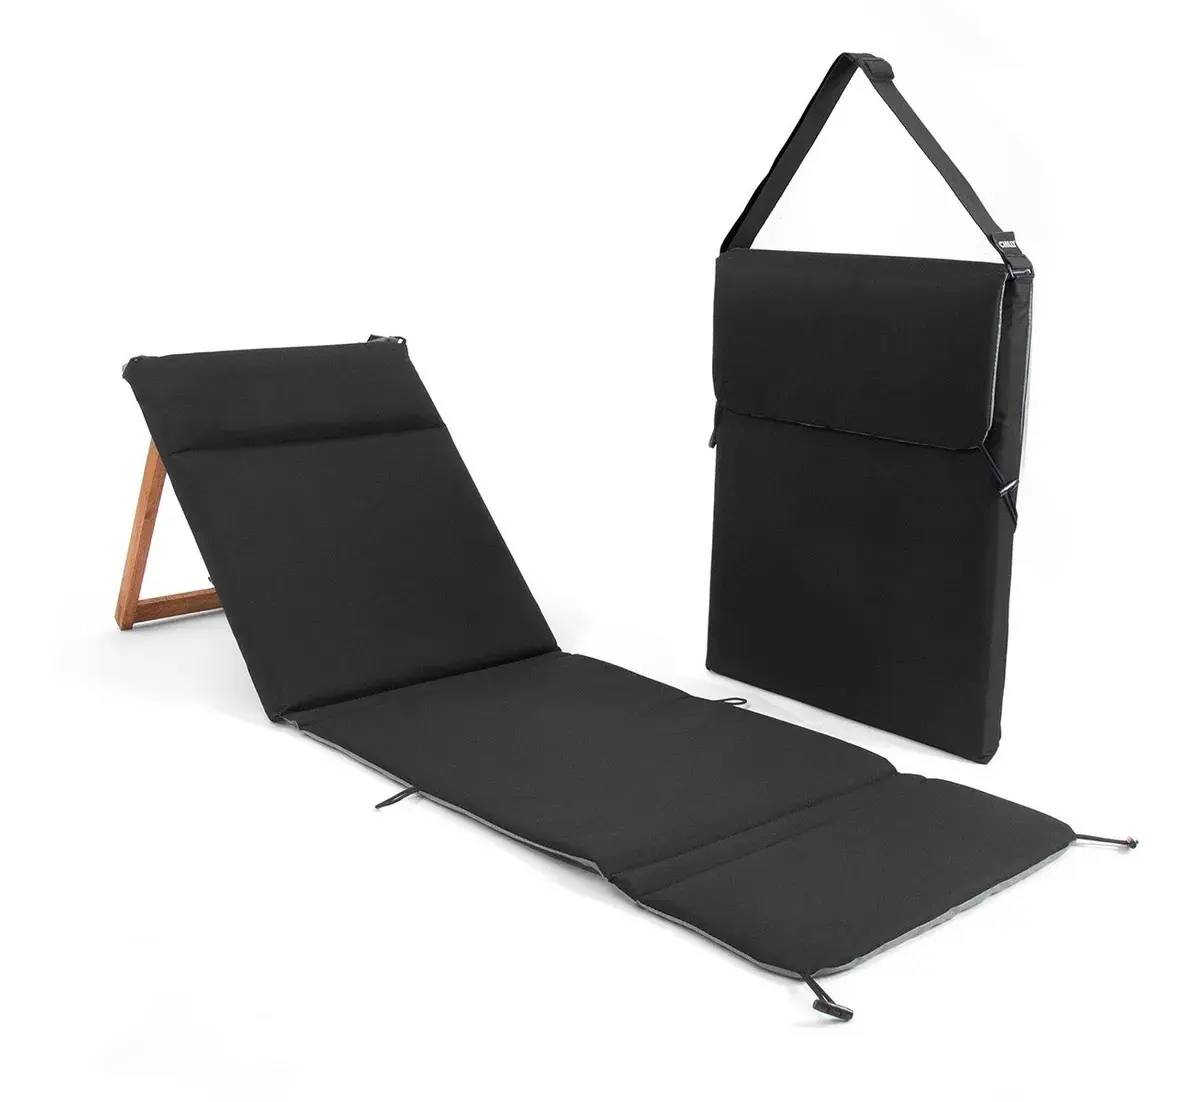 Low leichte kompakte holz picknick im freien camping zurück rest faltbare liege liegestuhl klapp tragbare strand stuhl